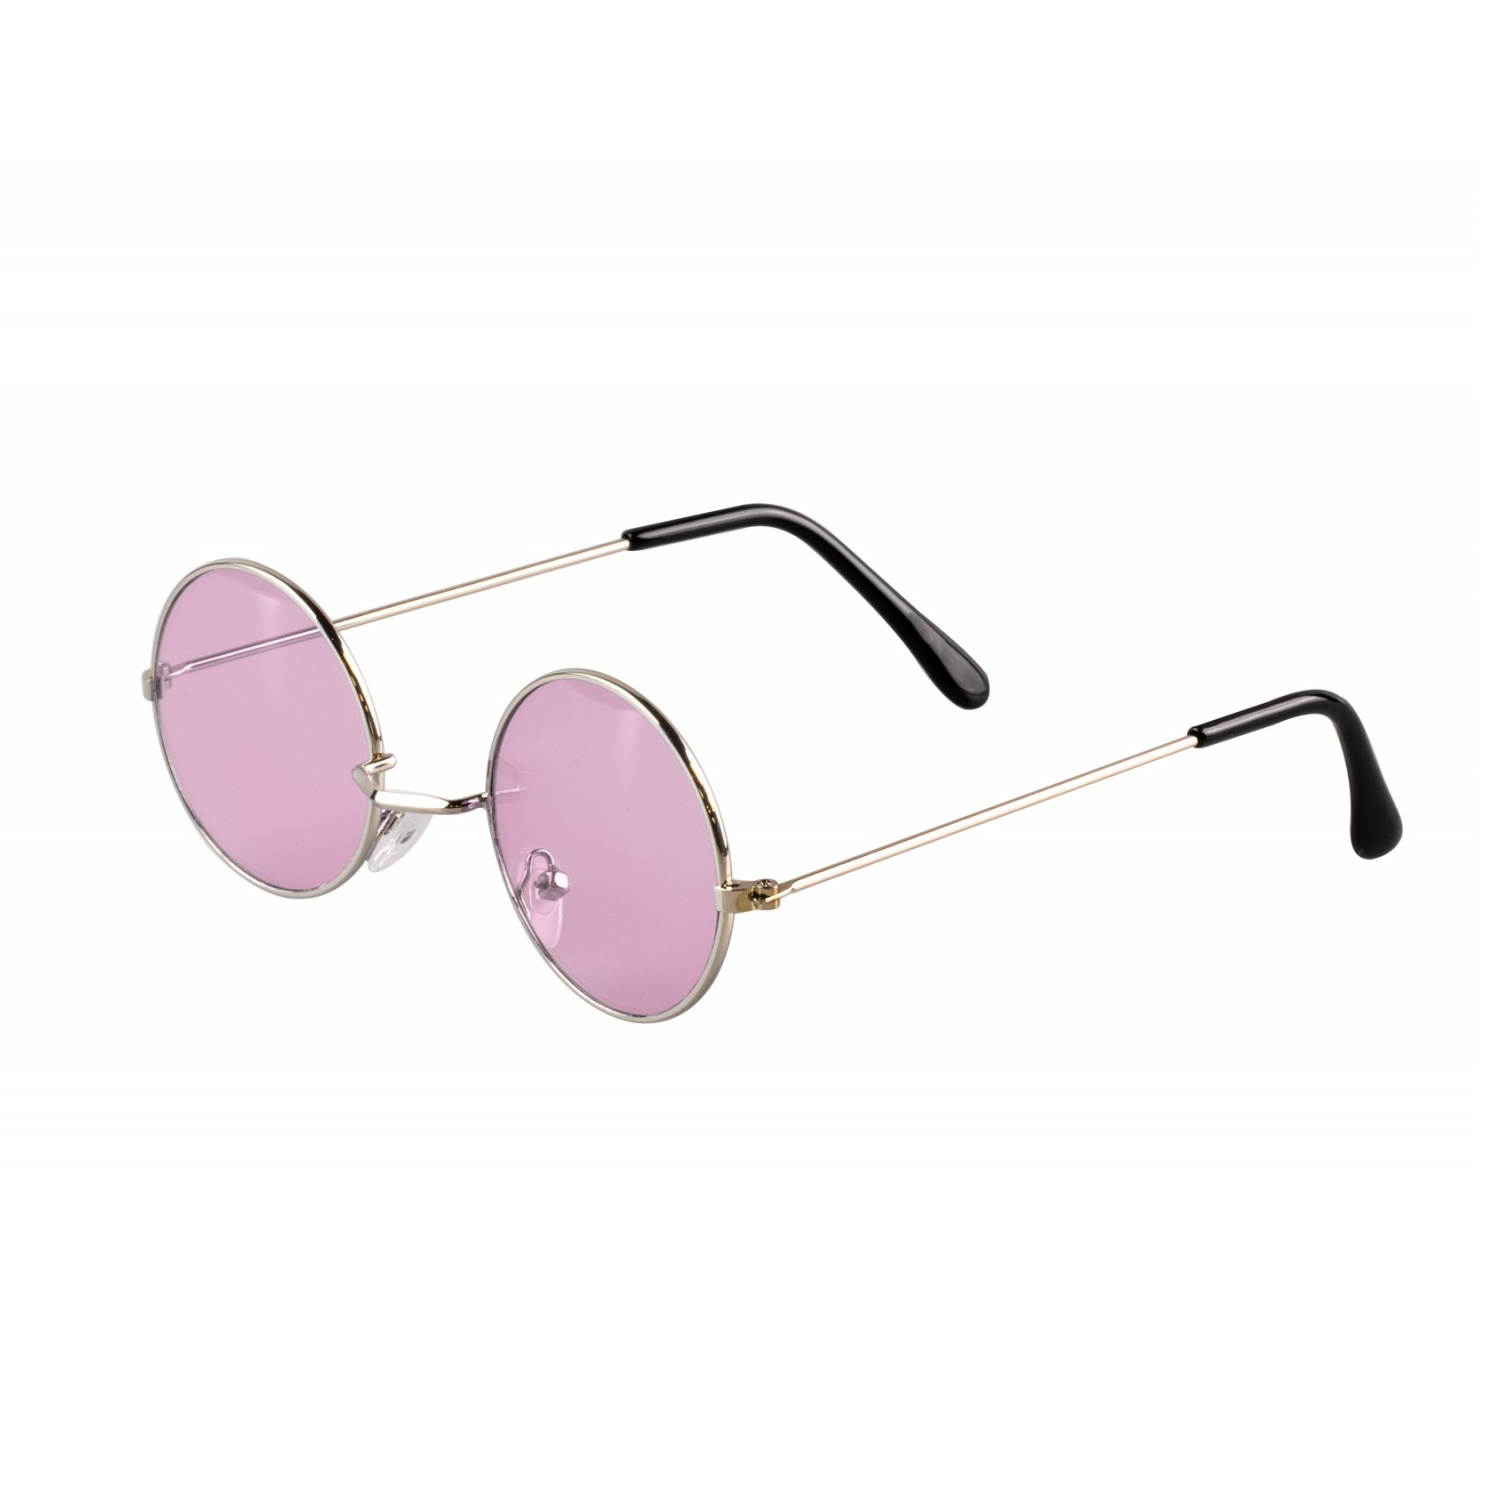 Brille Hippie, runde, rosa Gläser aus Metall - Rosa